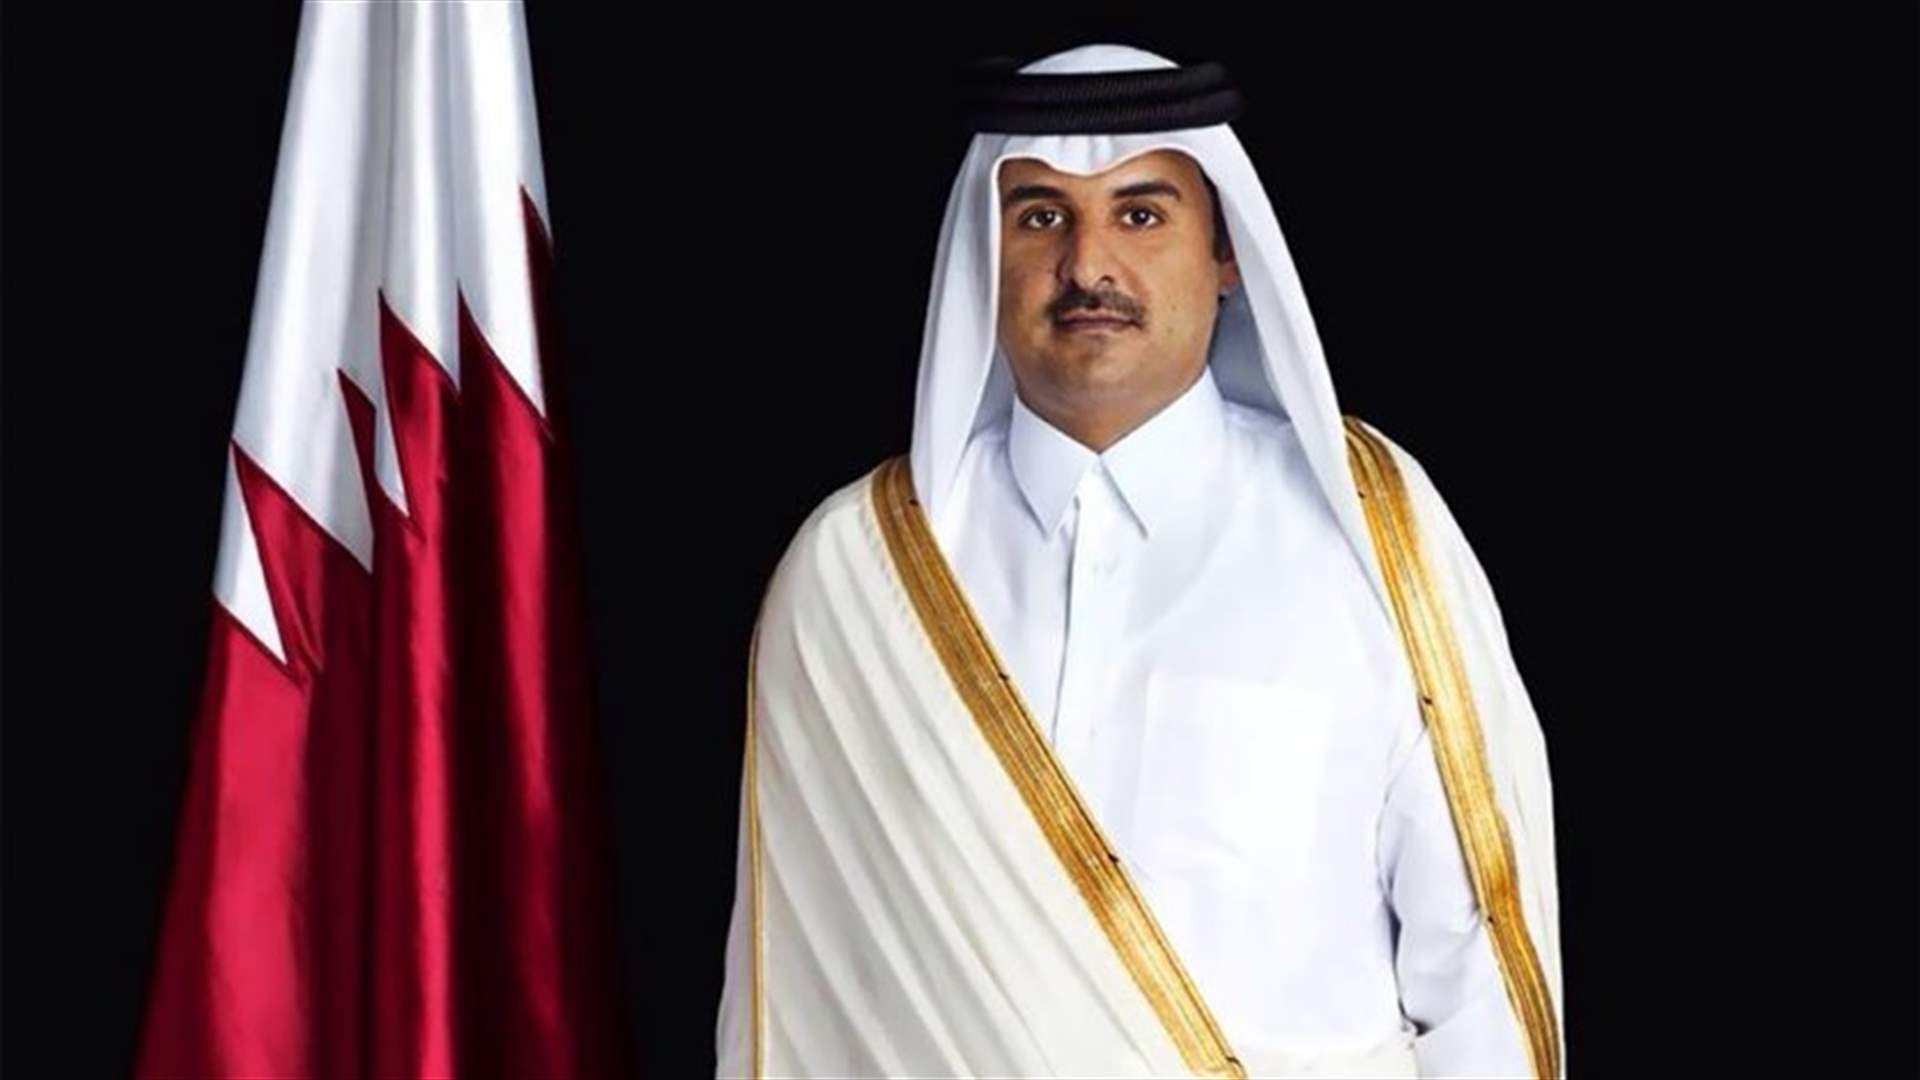 عشية القمة العربية الاقتصادية... امير قطر يقرر الحضور شخصياً